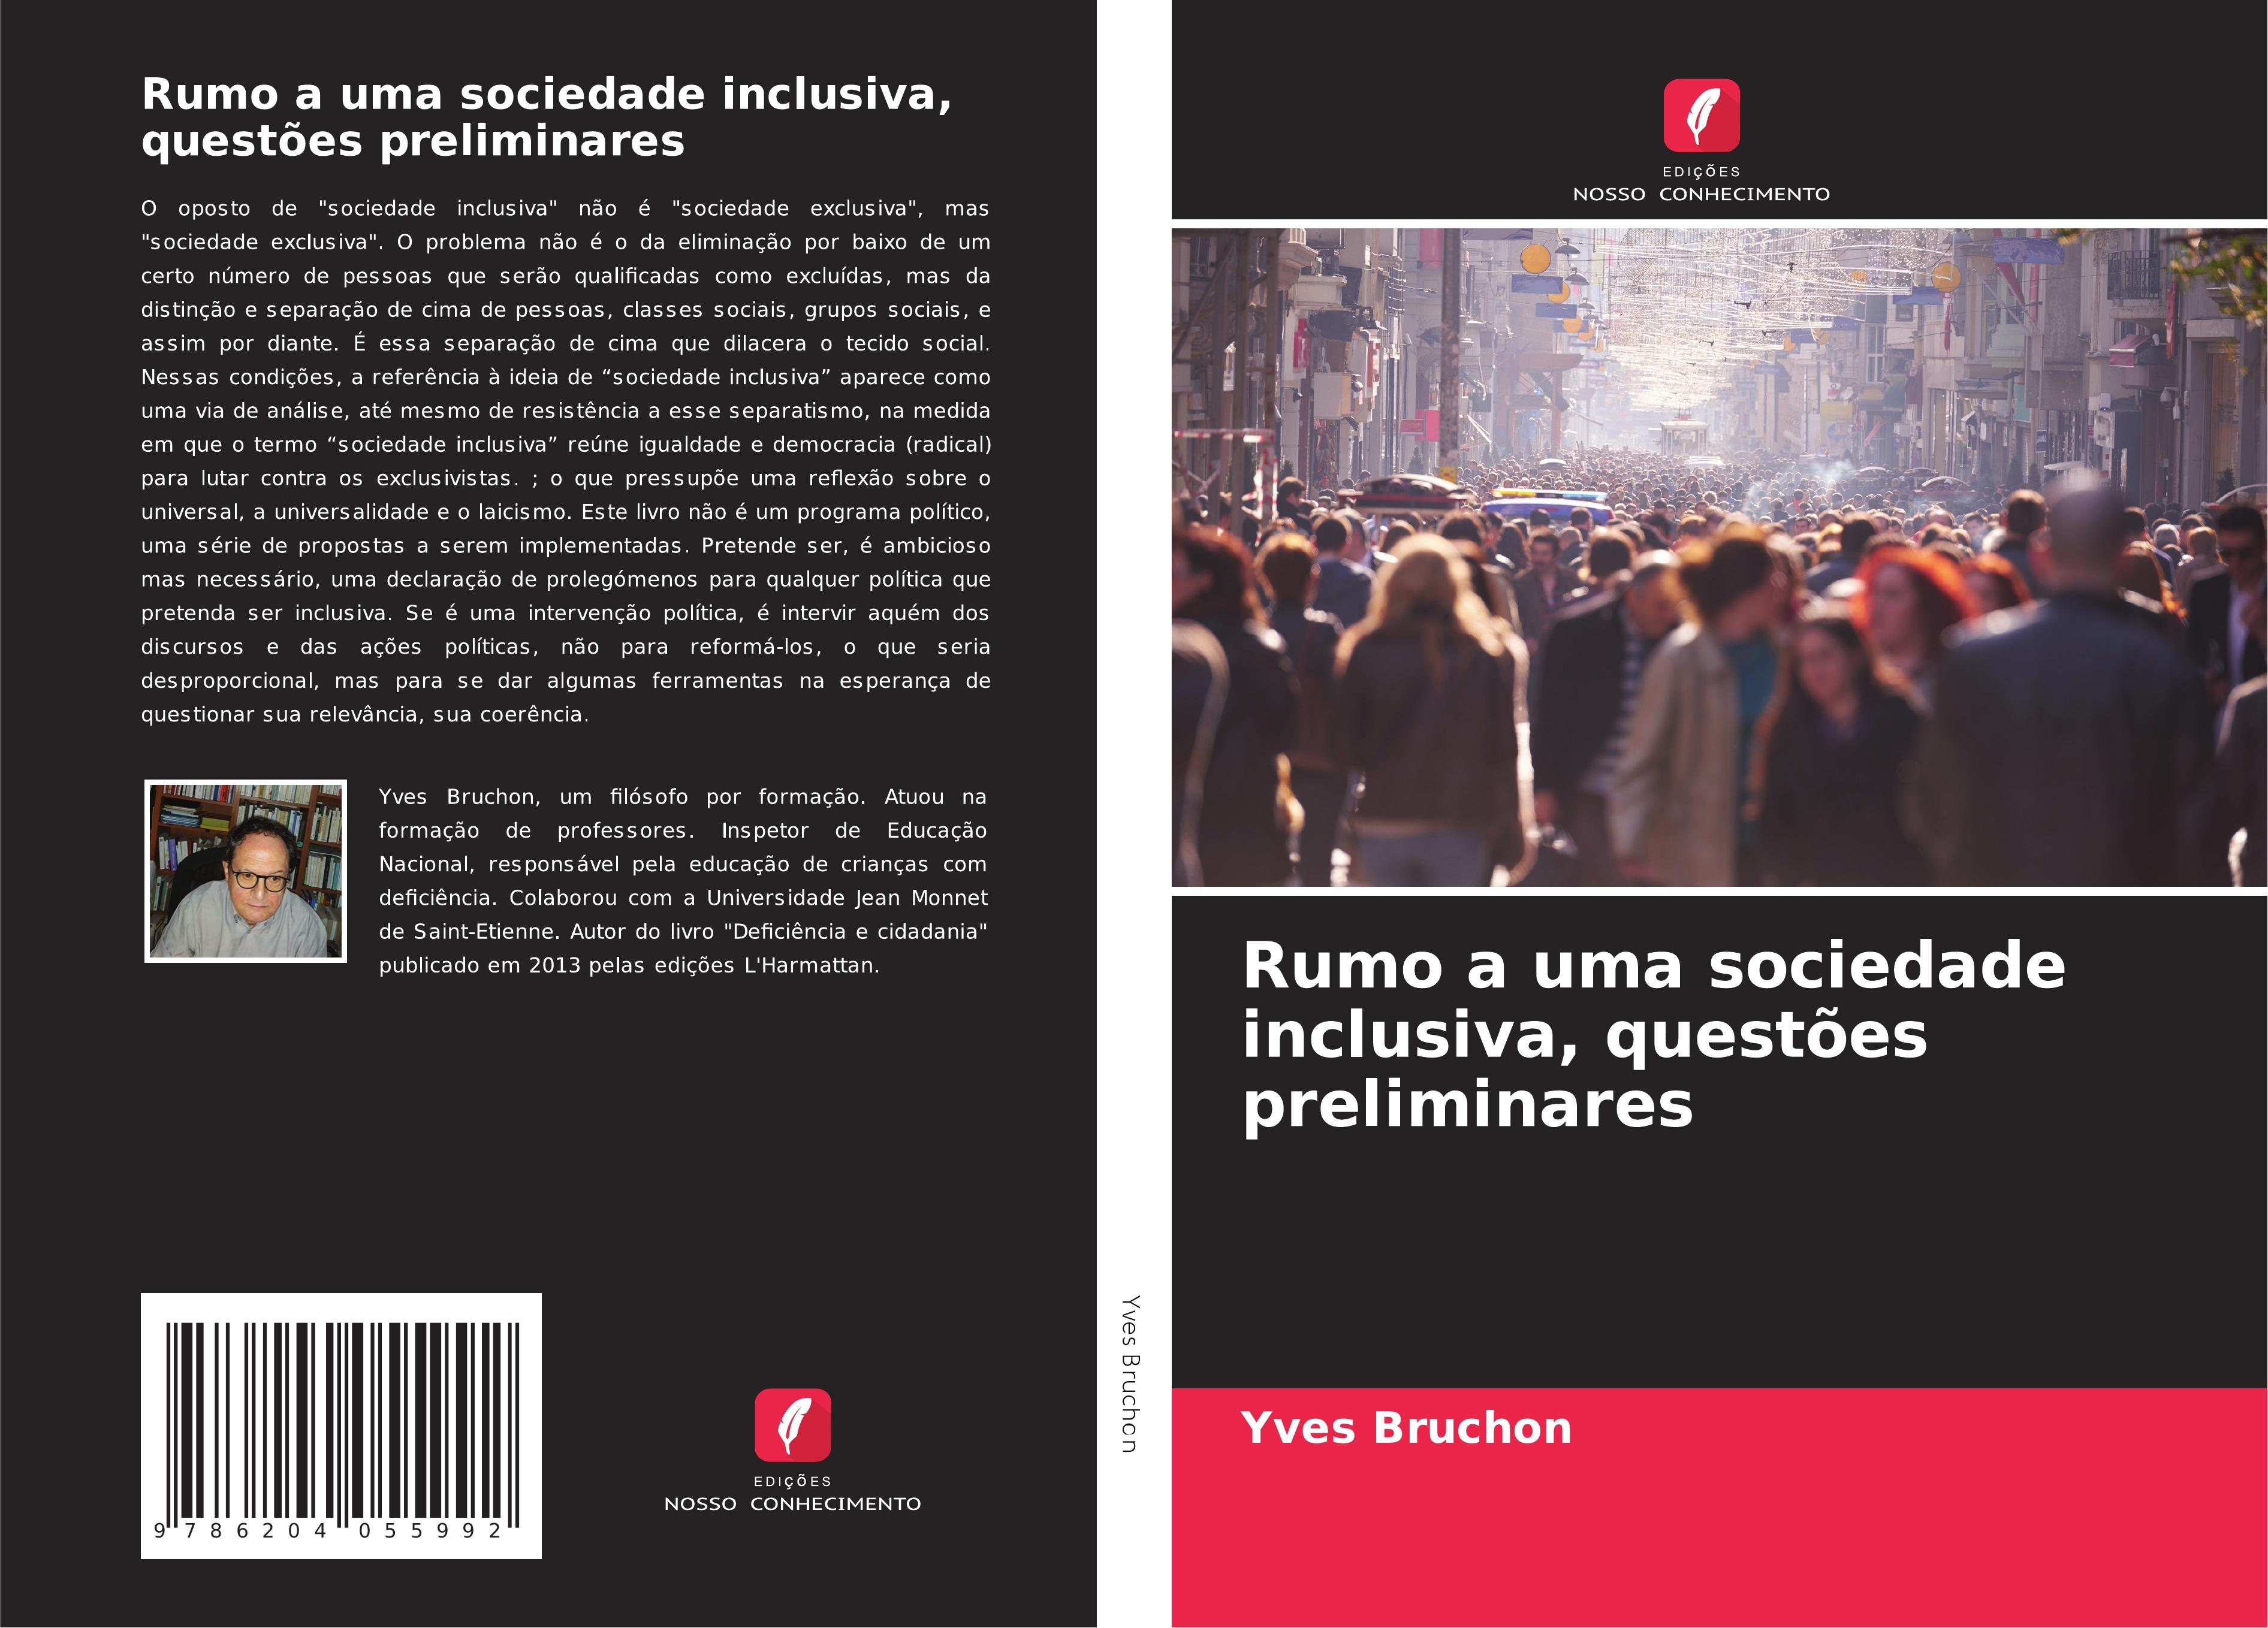 Rumo a uma sociedade inclusiva, questões preliminares - Bruchon, Yves